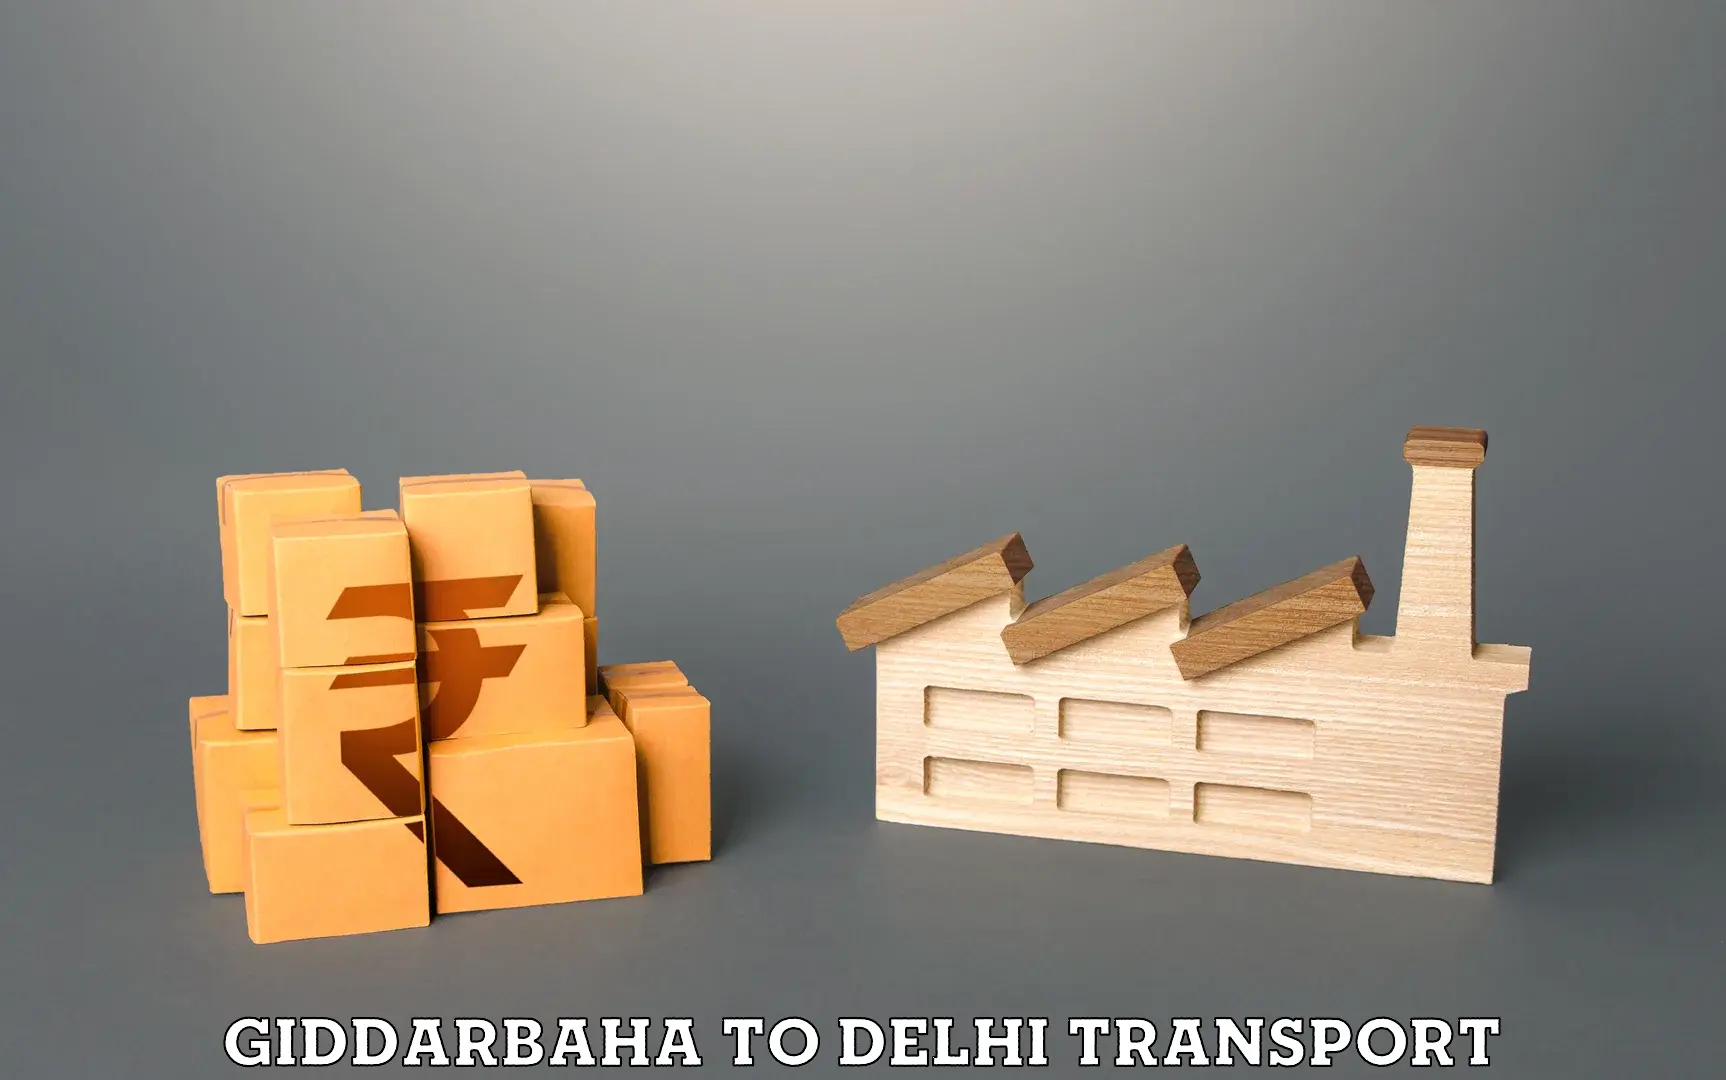 Transport in sharing Giddarbaha to Delhi